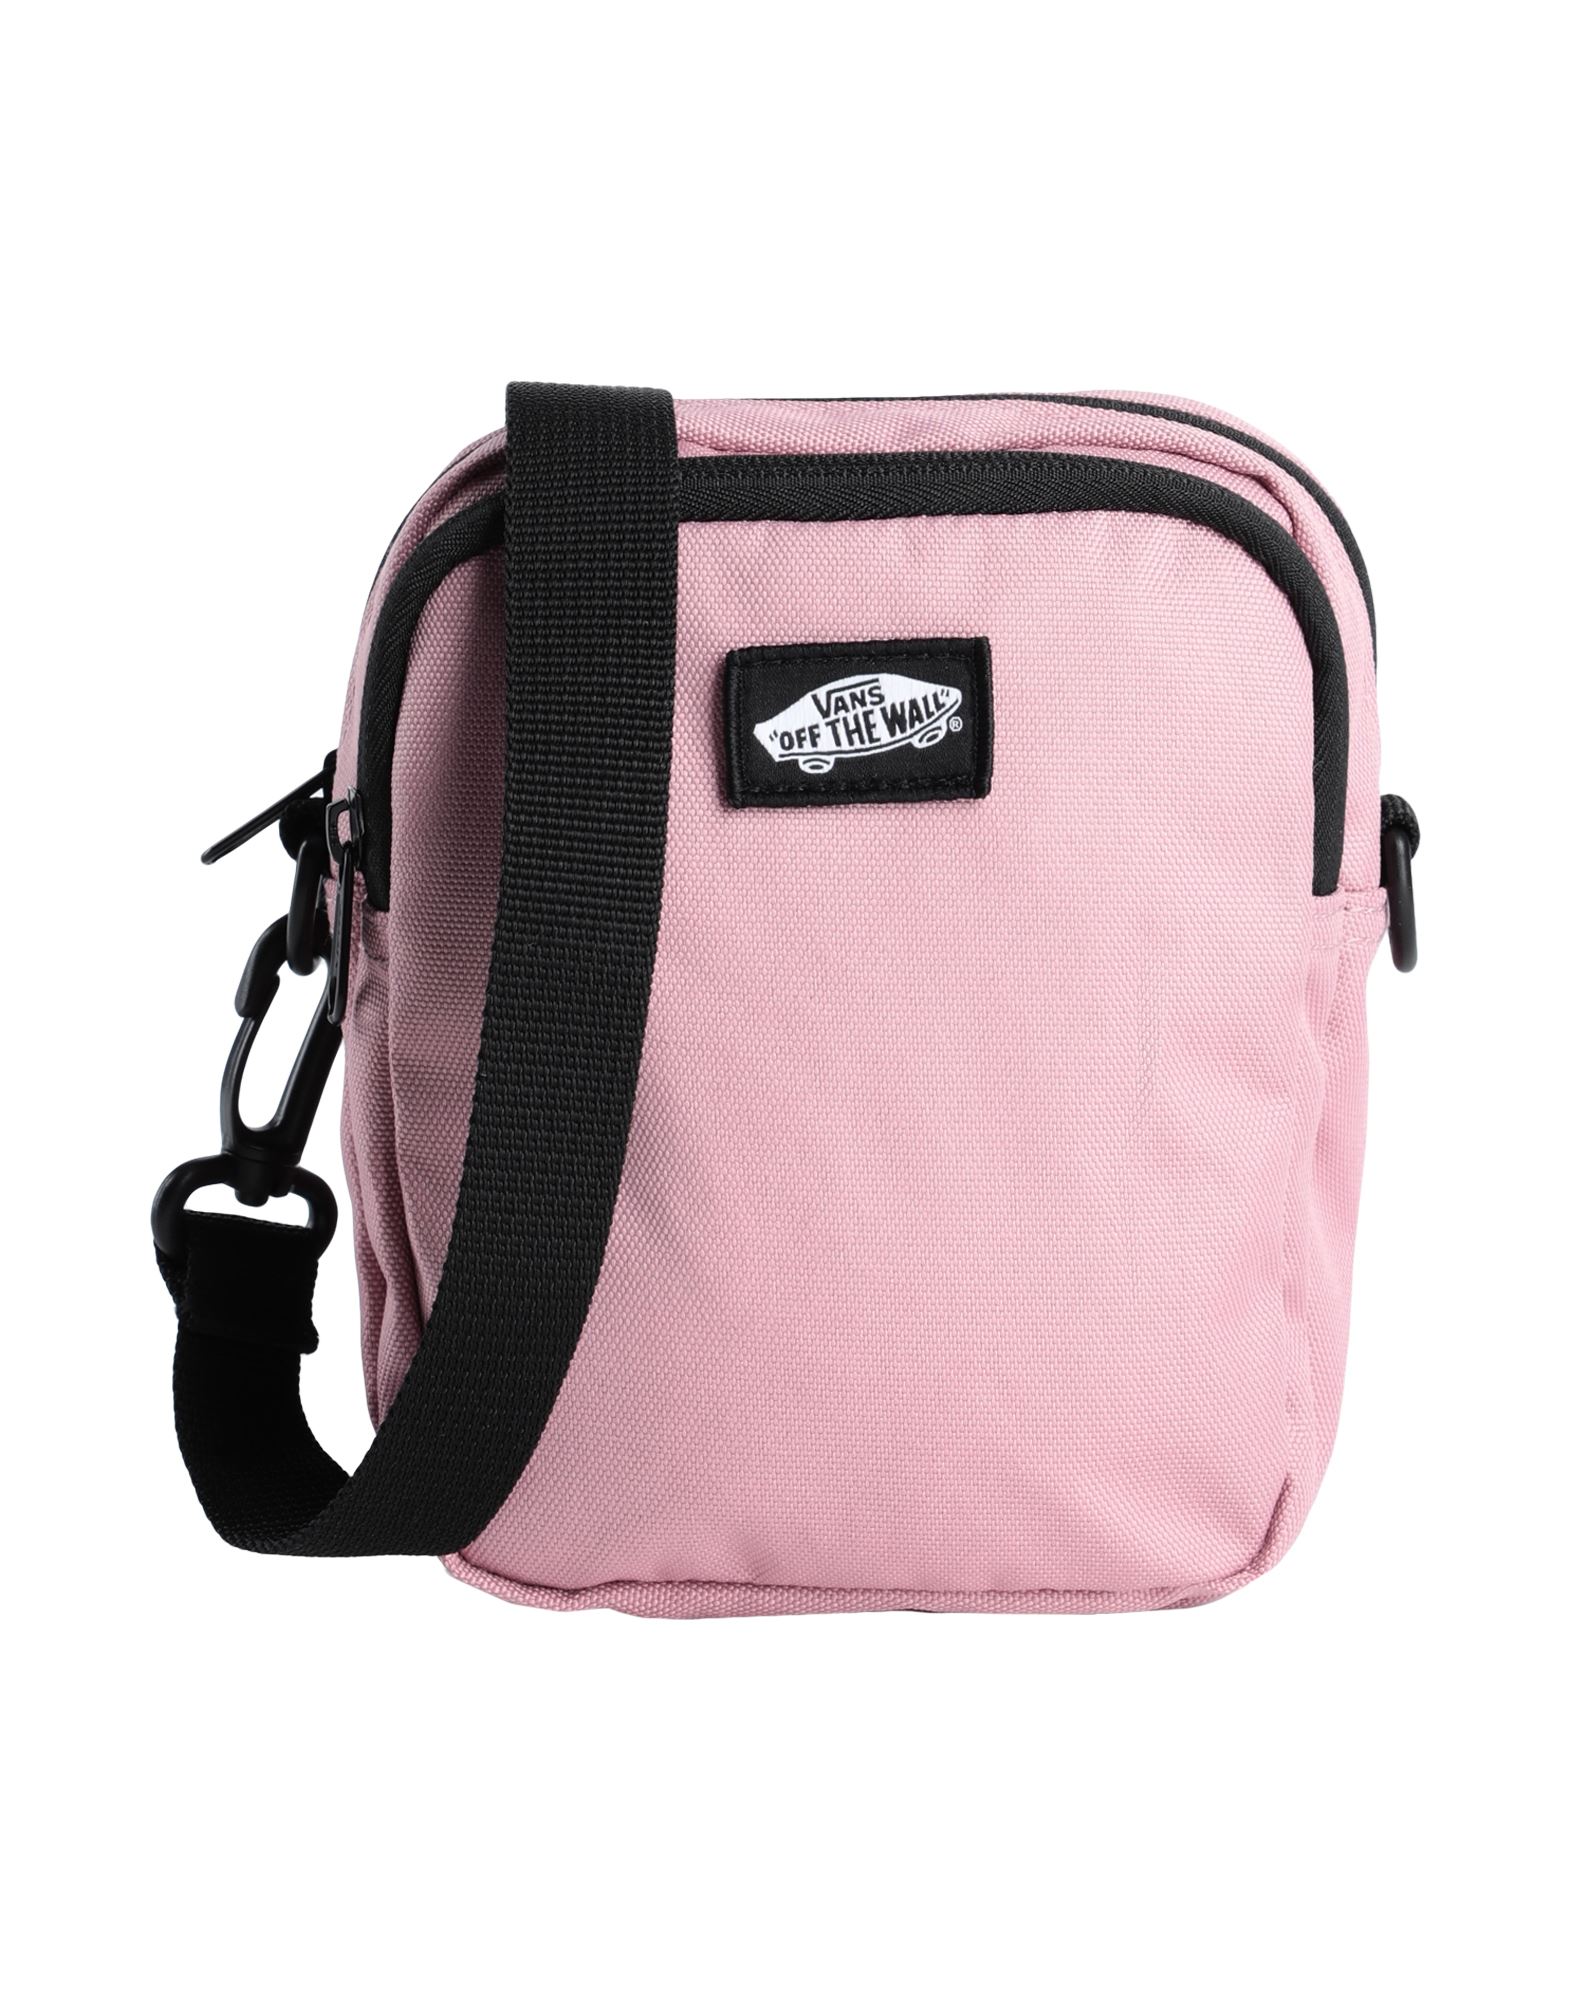 Vans Handbags In Pink